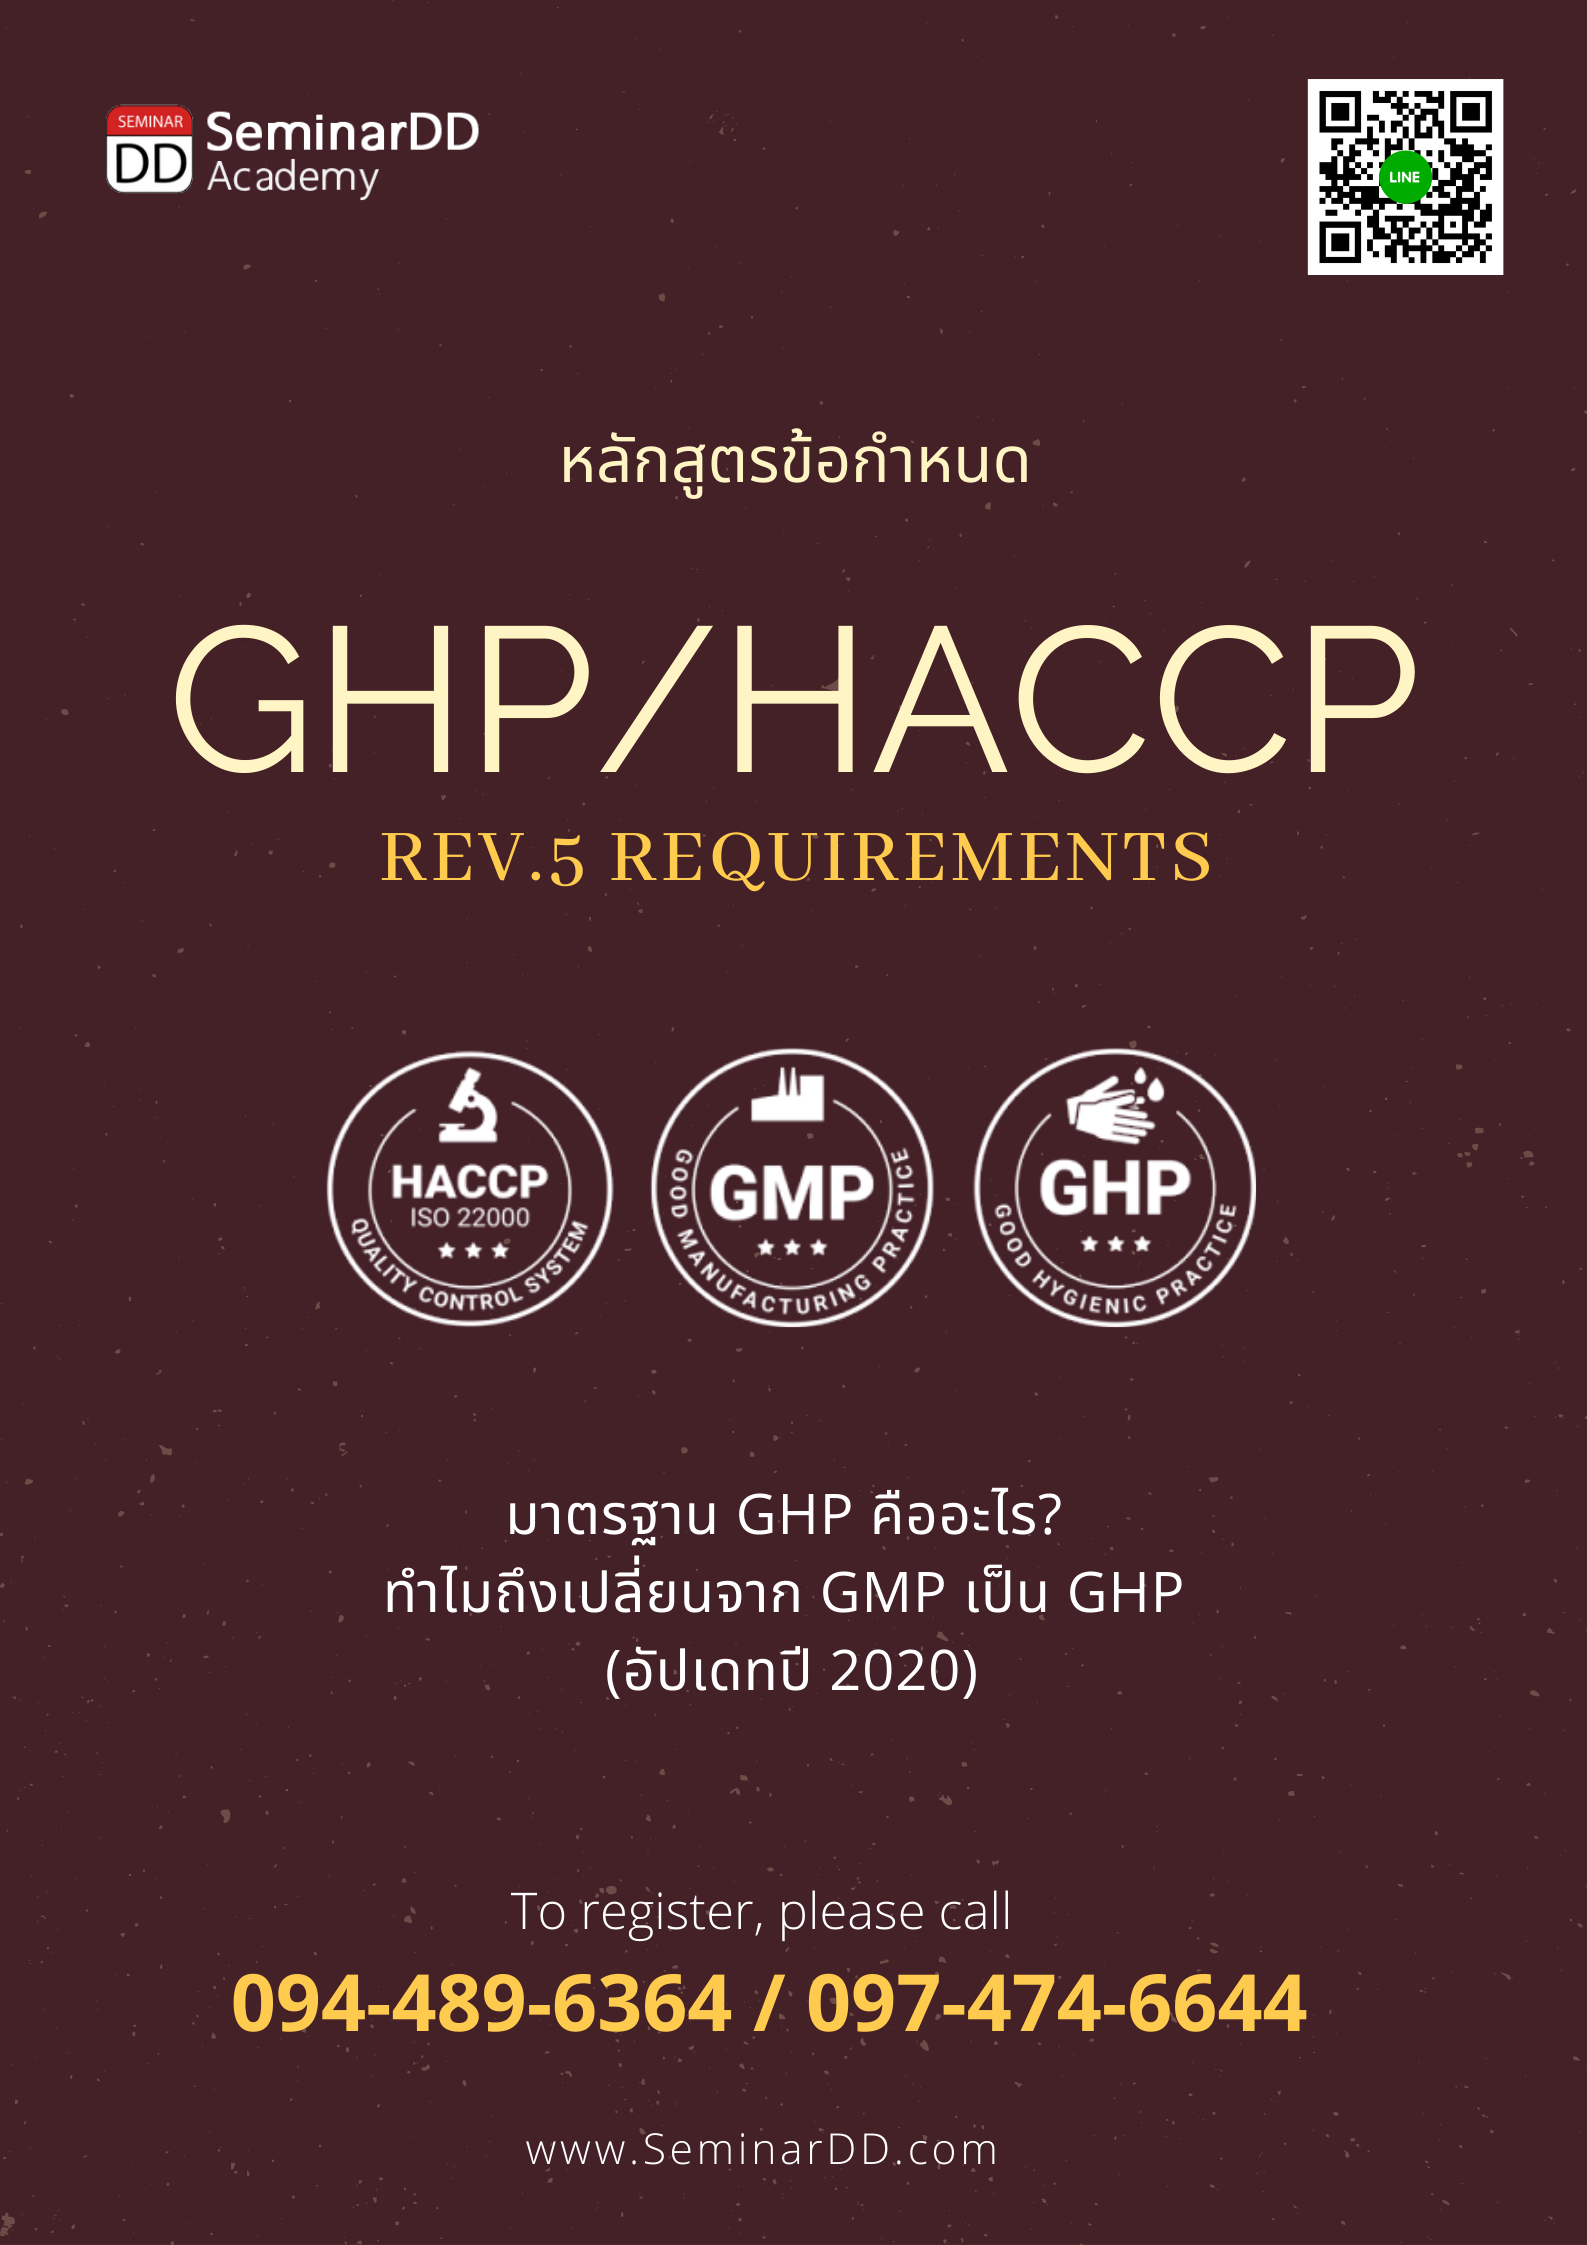 อบรม ข้อกำหนด GHPs/HACCP (GMP->GHP/HACCP Version 5 Requirements)